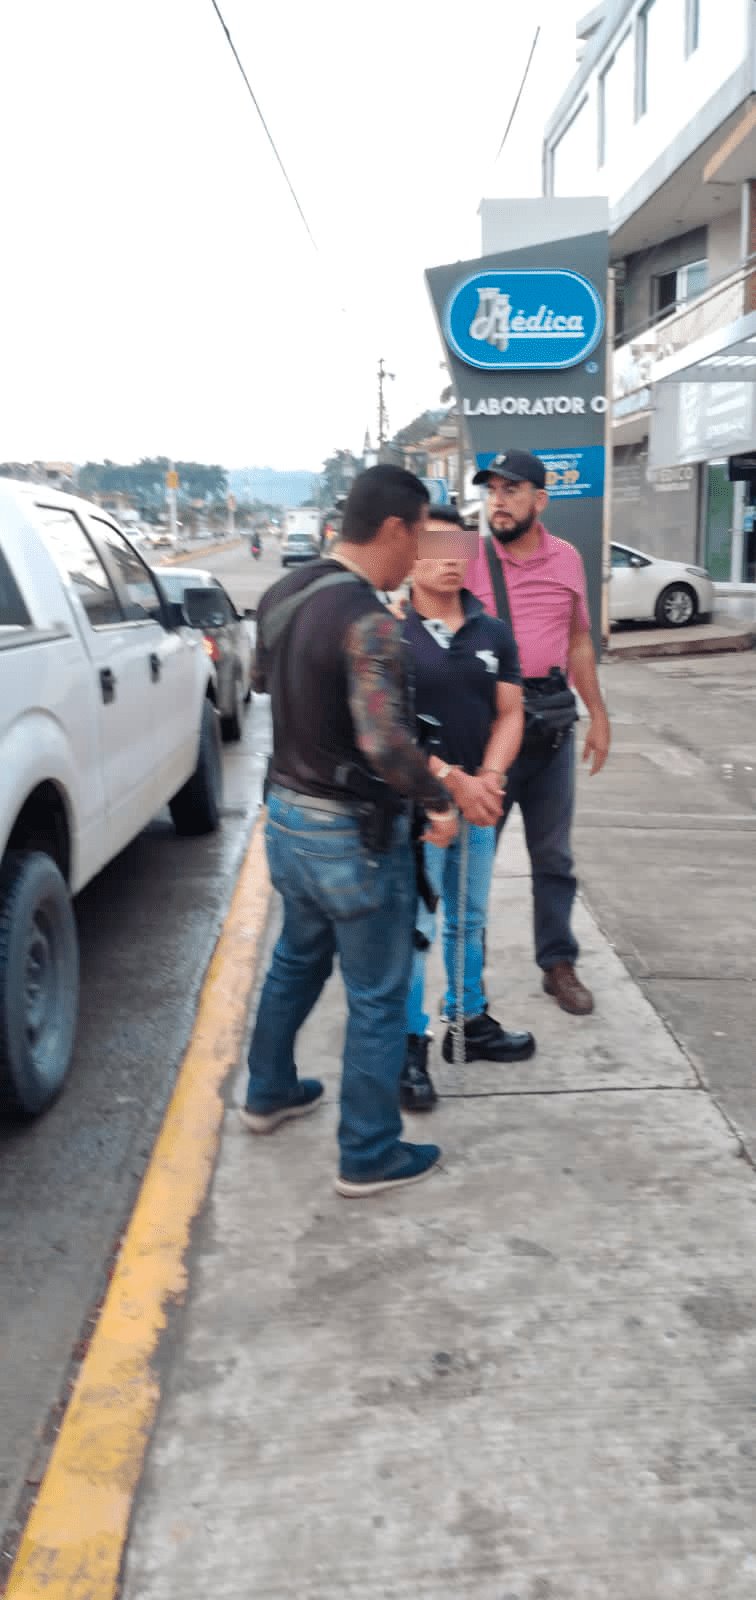 Capturan a sujeto que le quitó la vida a su novia en Tihuatlán